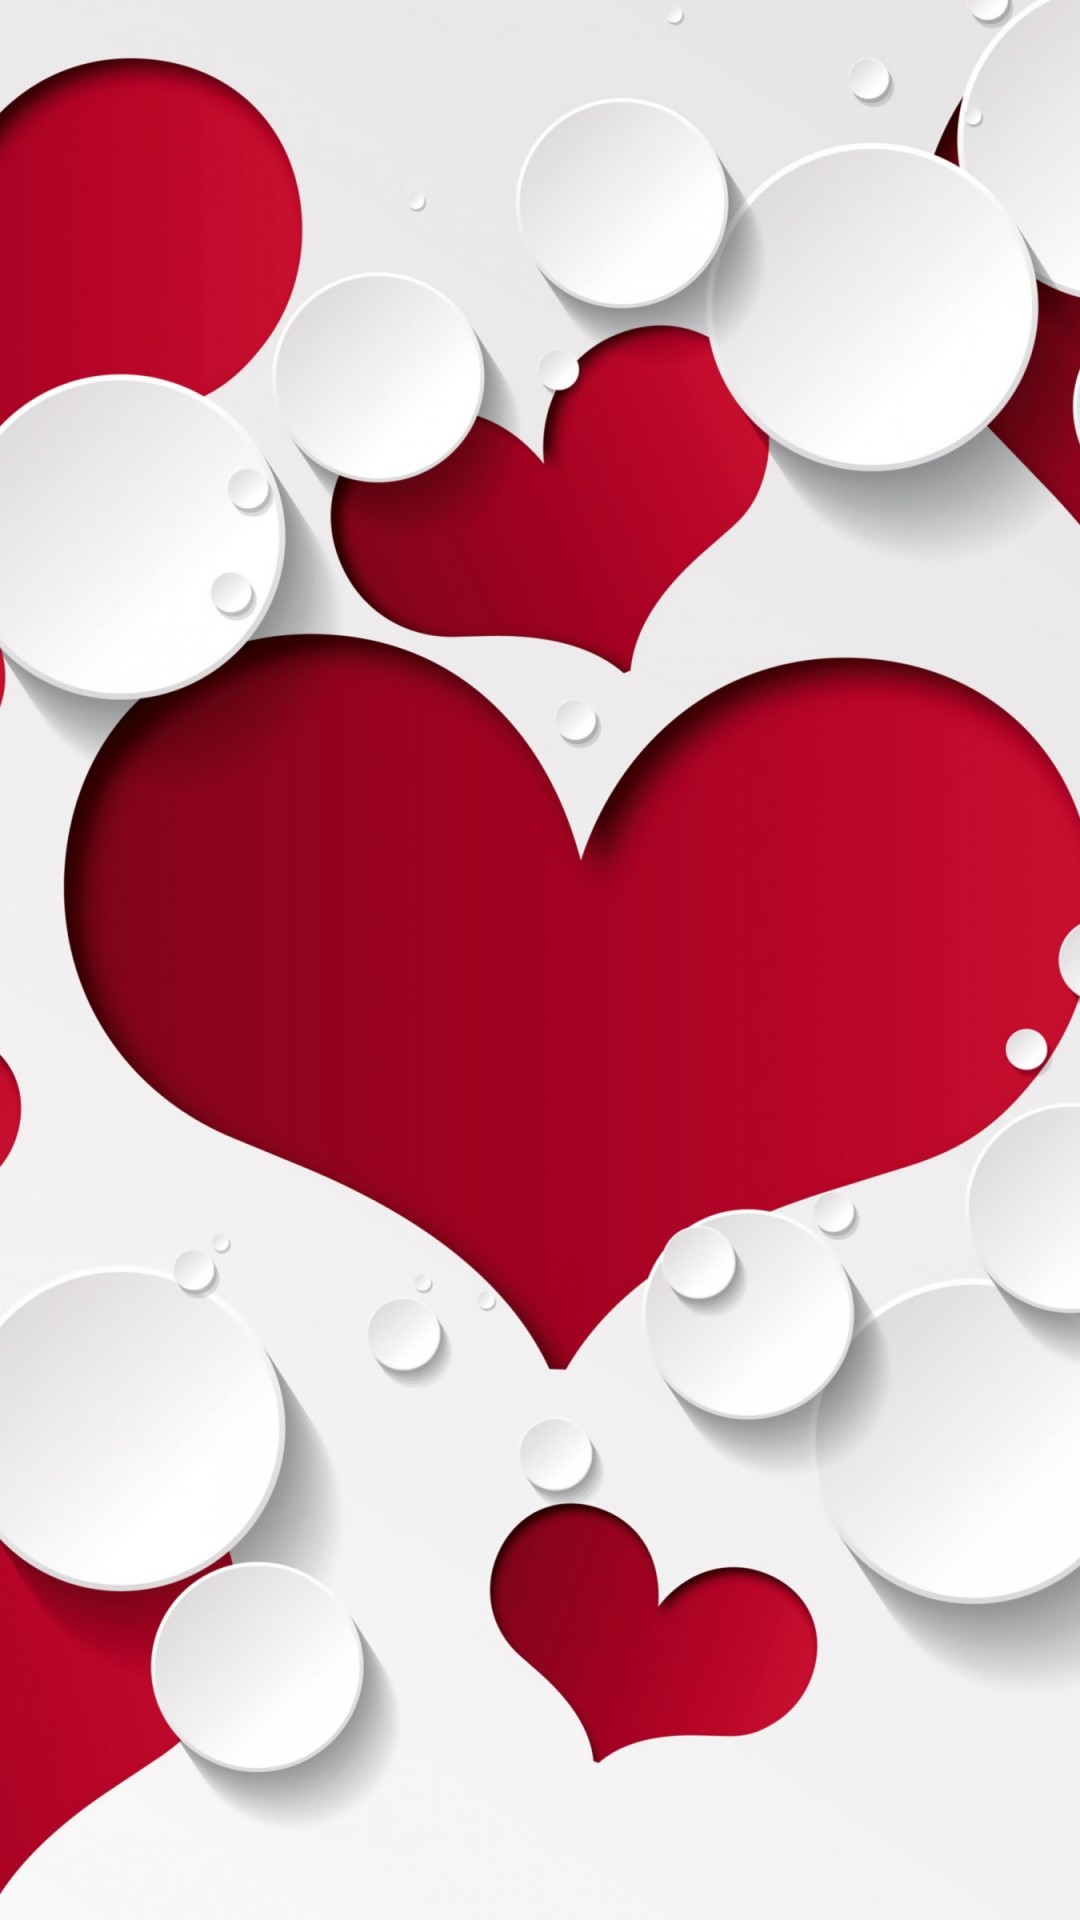 Love Heart Shaped Pattern Wallpaper for Motorola Moto X